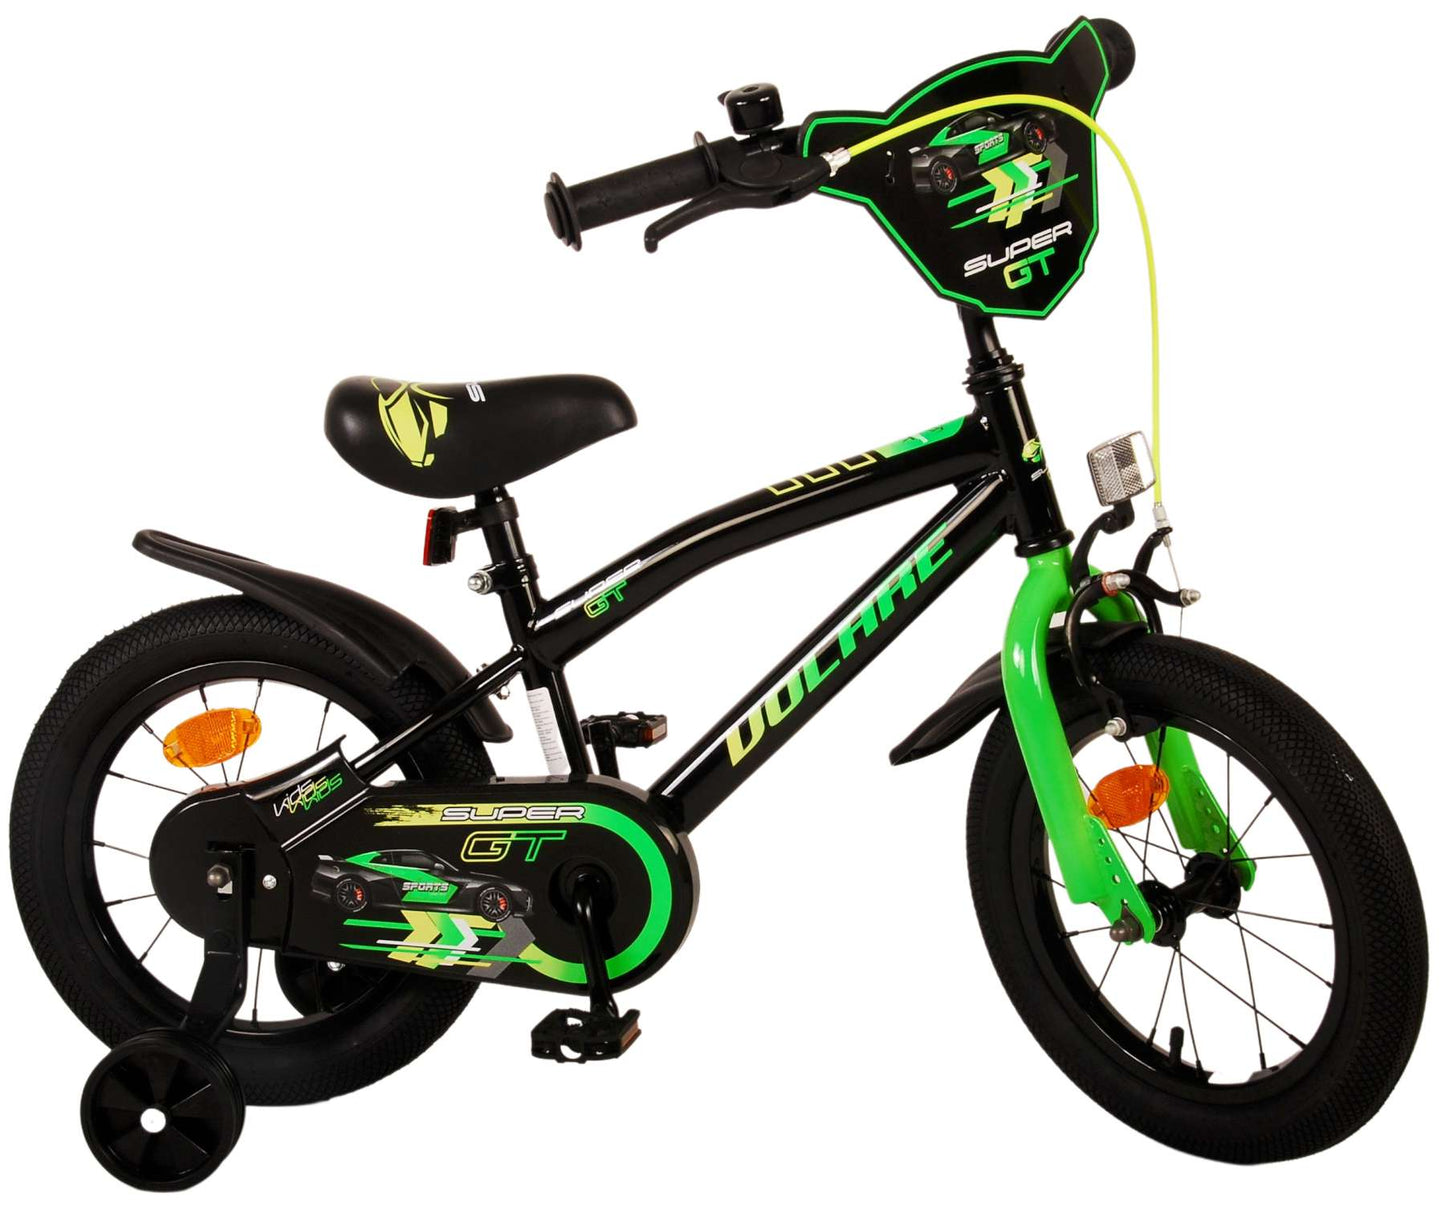 Bike per bambini di Vlatare Super GT - Boys - 14 pollici - Green